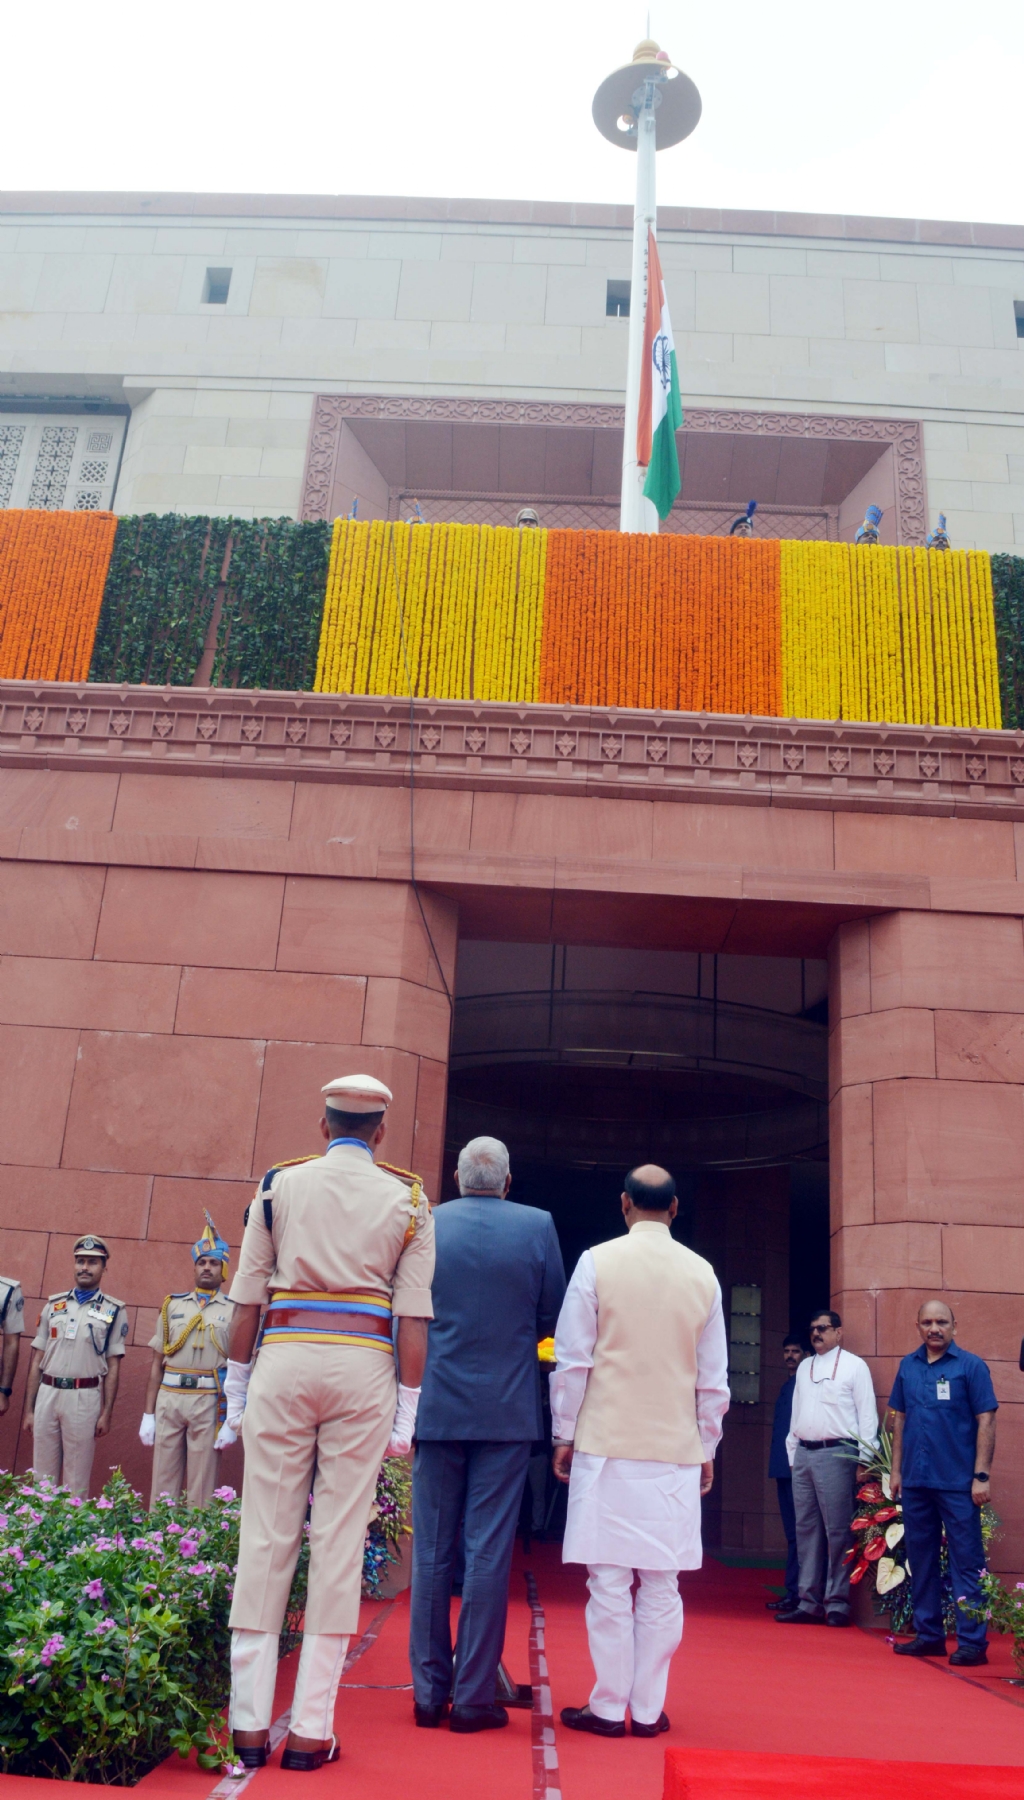 नई दिल्ली में रविवार, 17 सितंबर, 2023 को नए संसद भवन के 'गज द्वार' पर ध्वजारोहण समारोह के दौरान उपराष्ट्रपति जगदीप धनखड़ जगदीप धनखड़ और लोकसभा अध्यक्ष ओम बिरला। हिन्दुस्थान समाचार/ फोटो गणेश बिष्ट